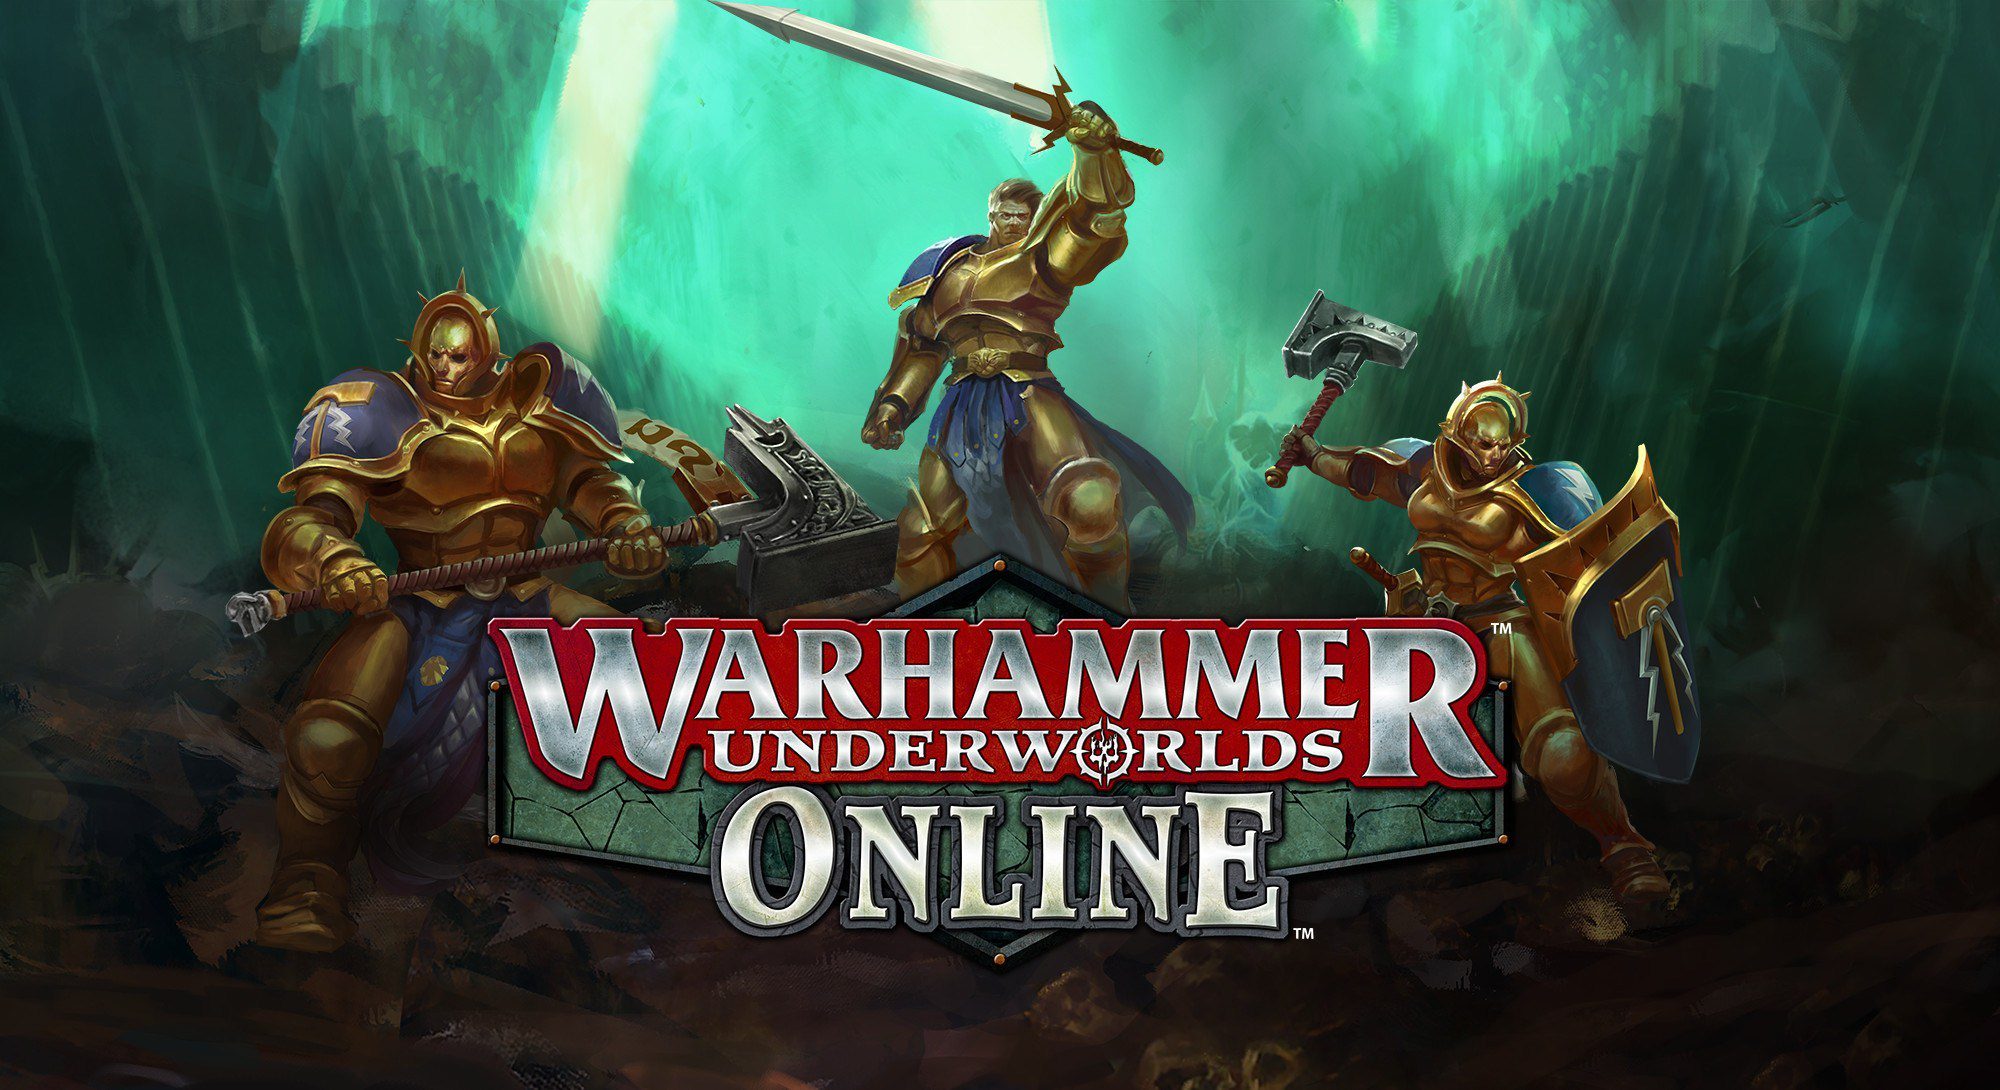 Warhammer Underworlds: Online launches on Steam